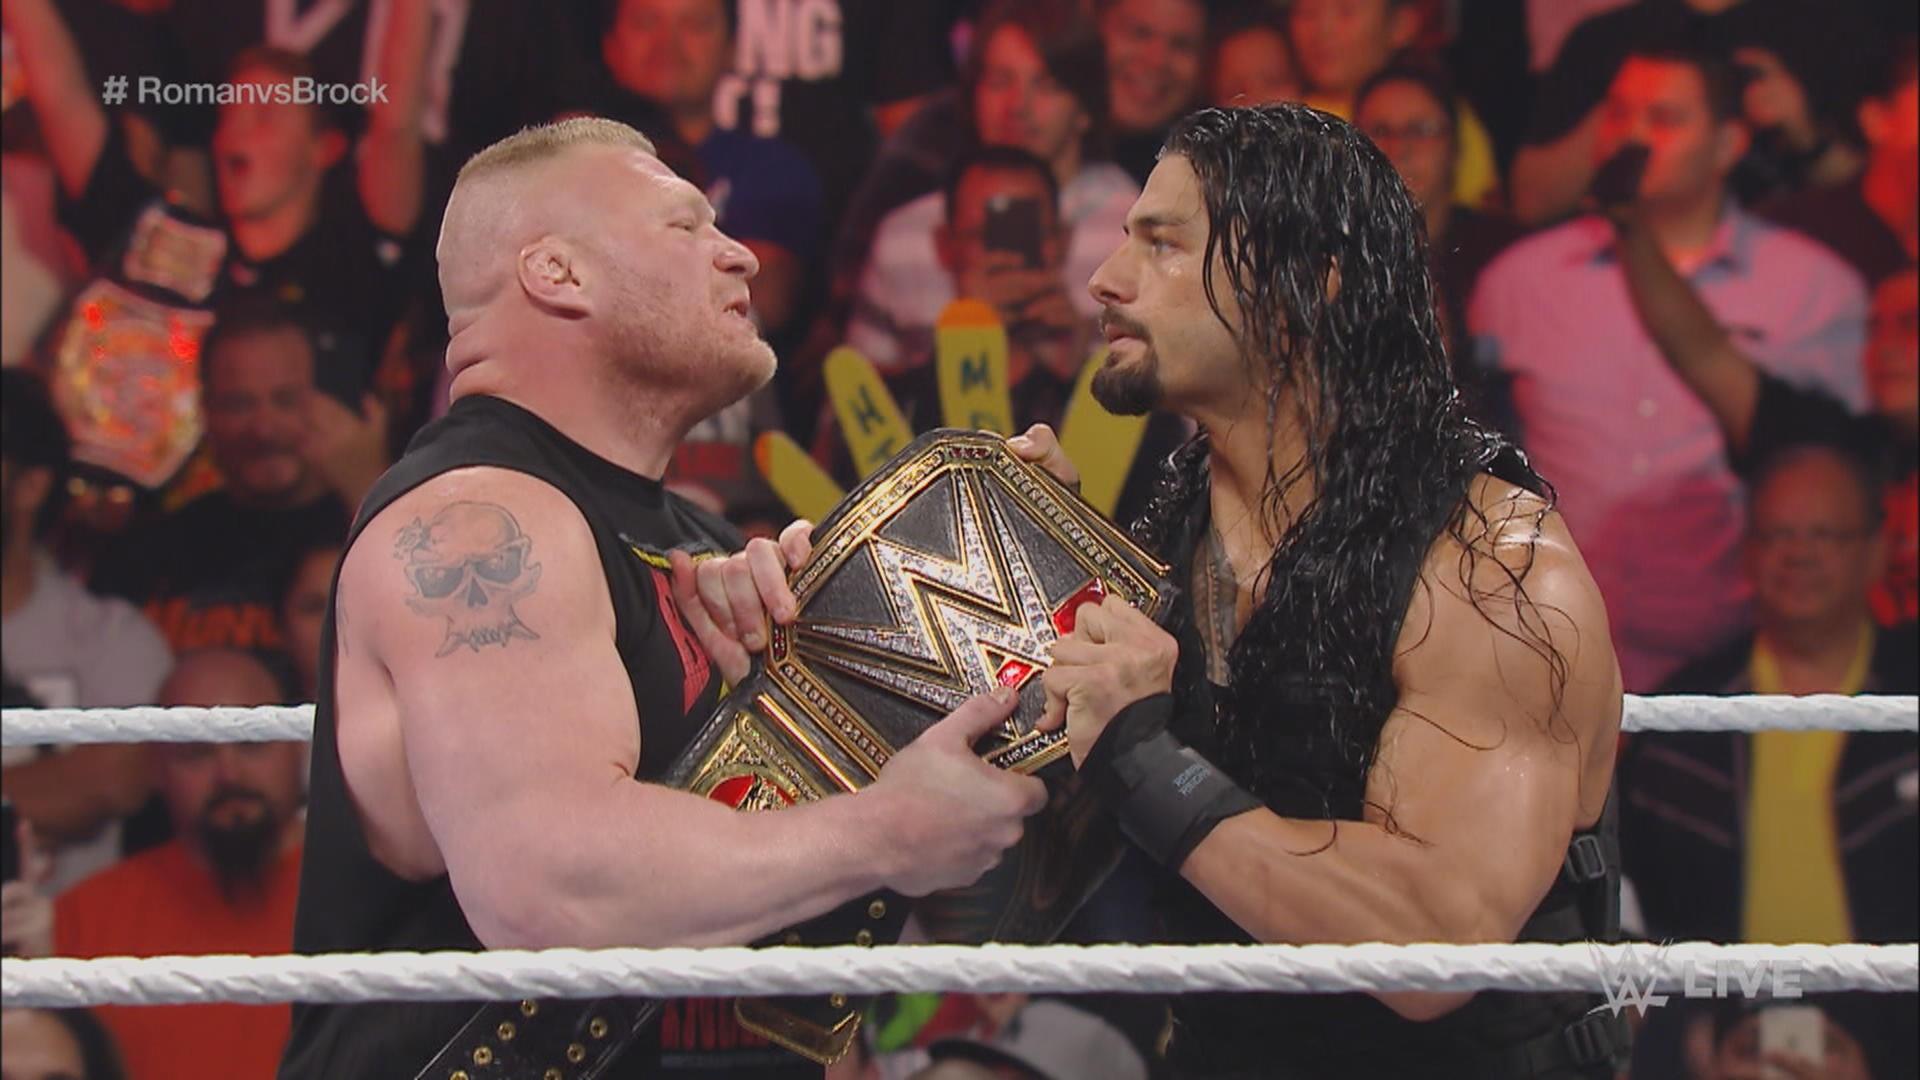 WWE Superstar Brock Lesnar vs Roman Reigns